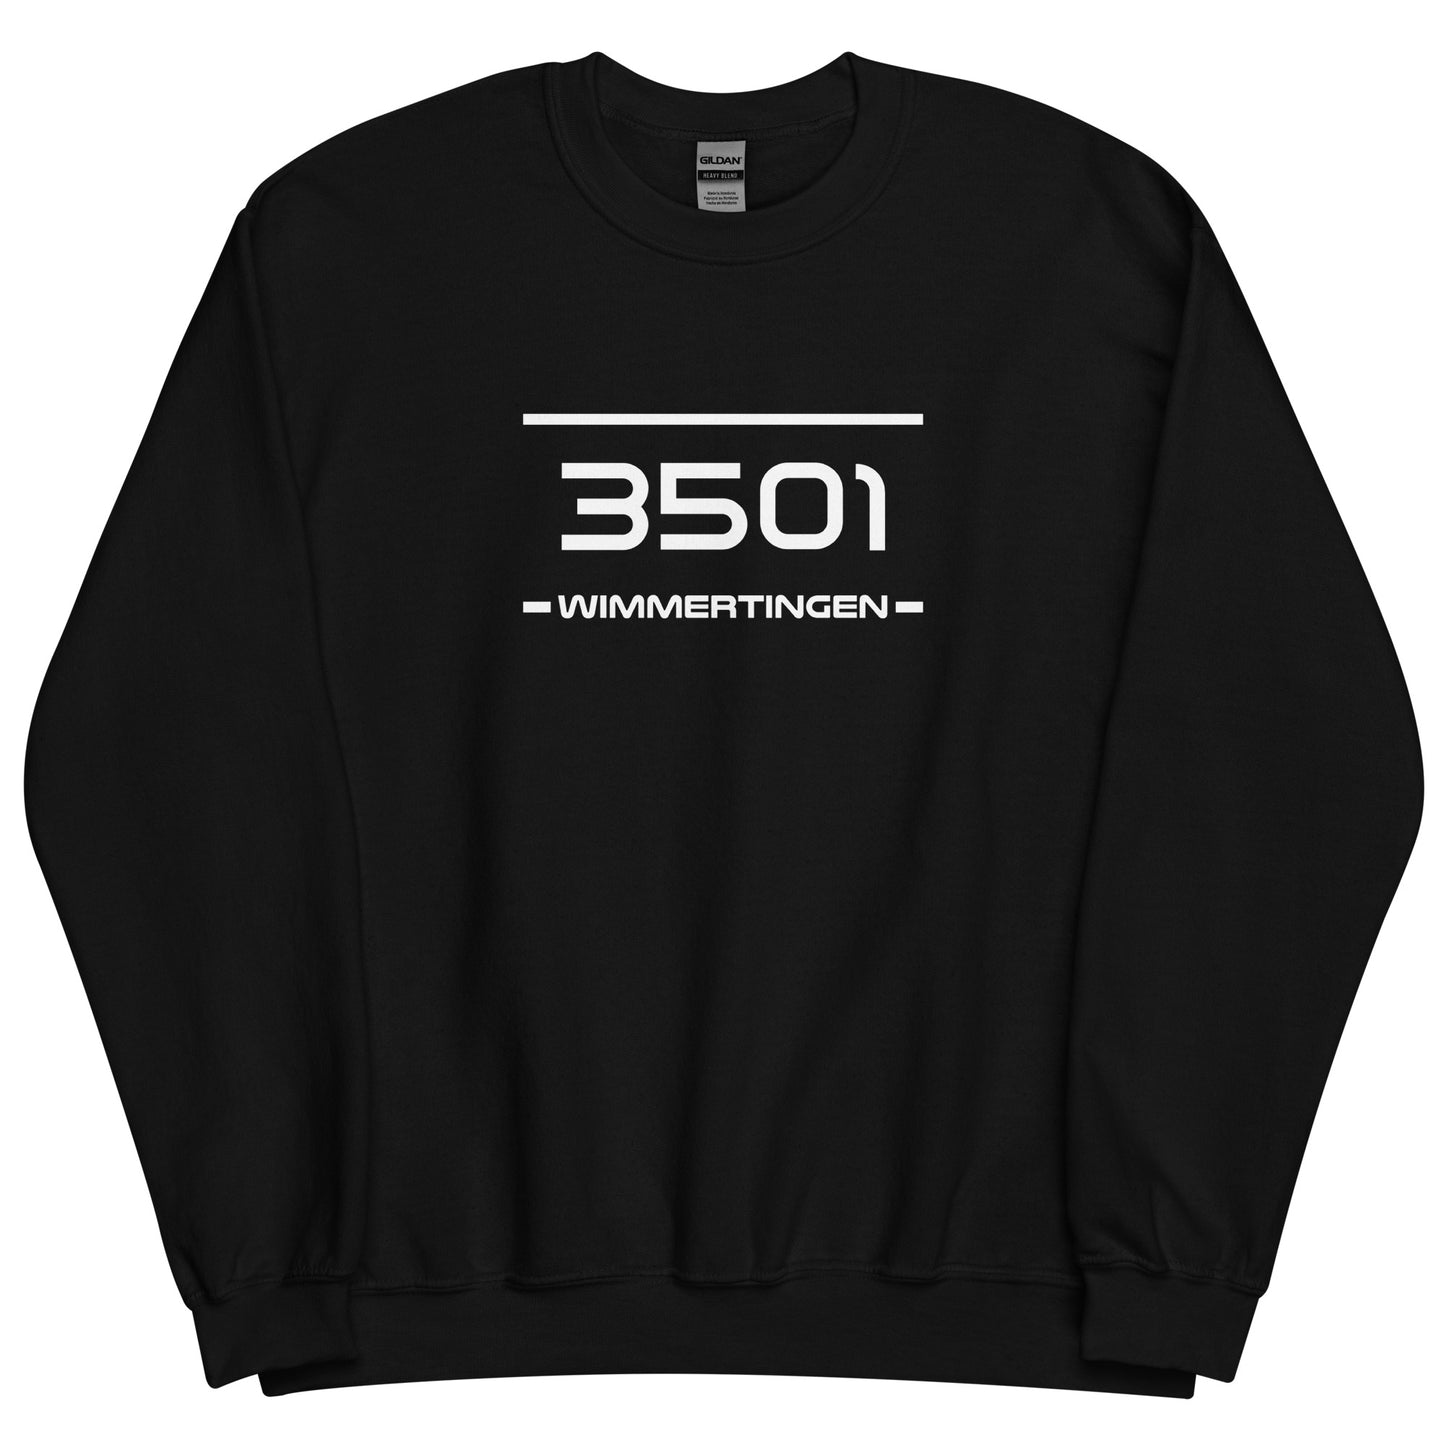 Sweater - 3501 - Wimmertingen (M/V)